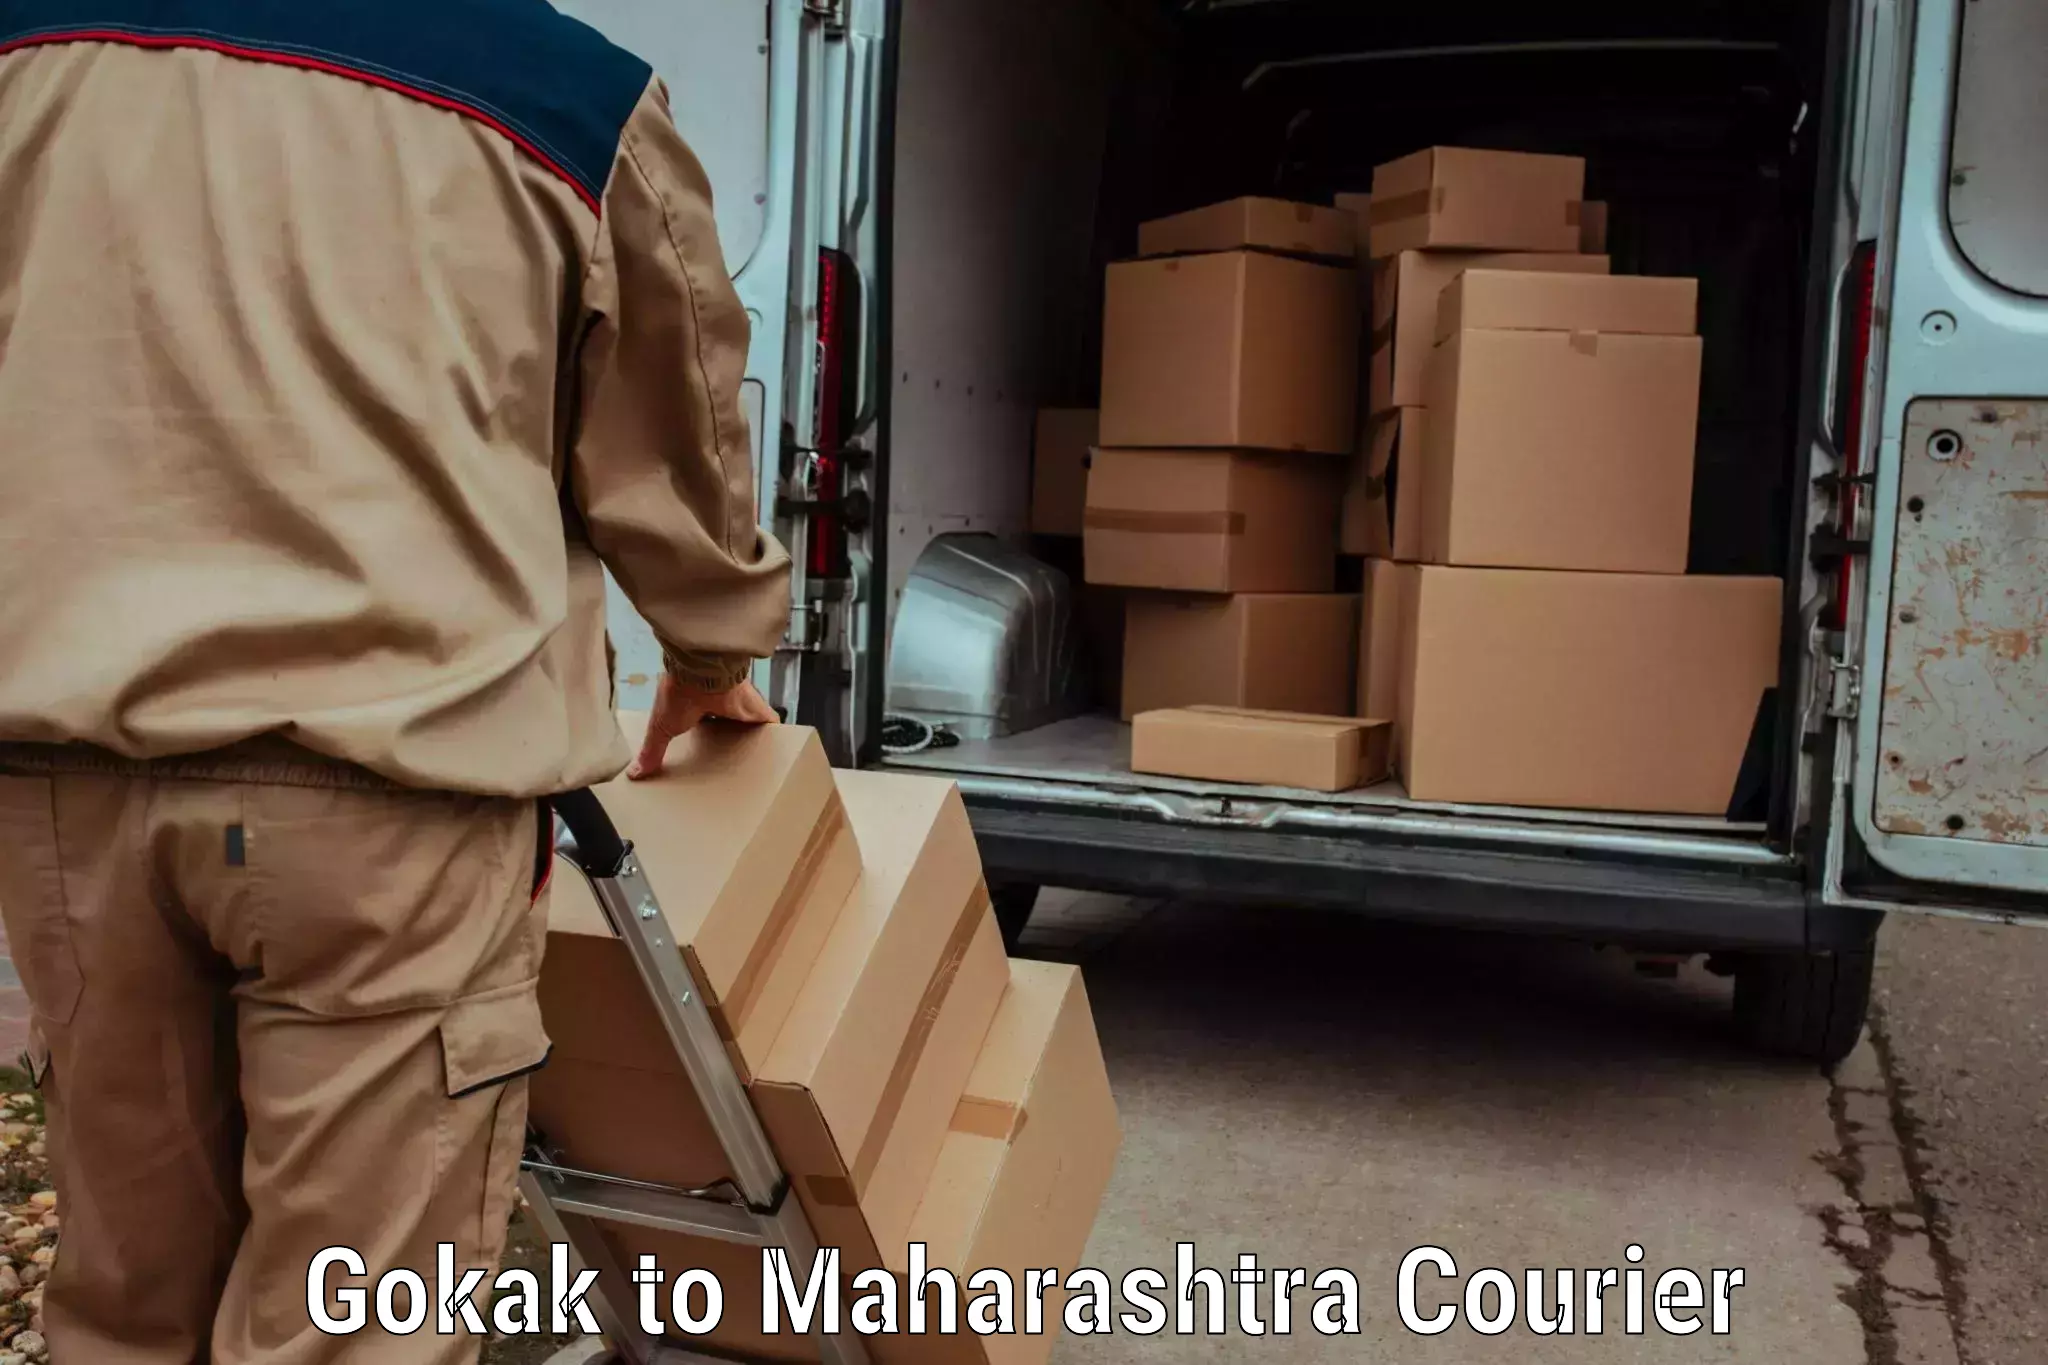 Next day courier in Gokak to Ichalkaranji